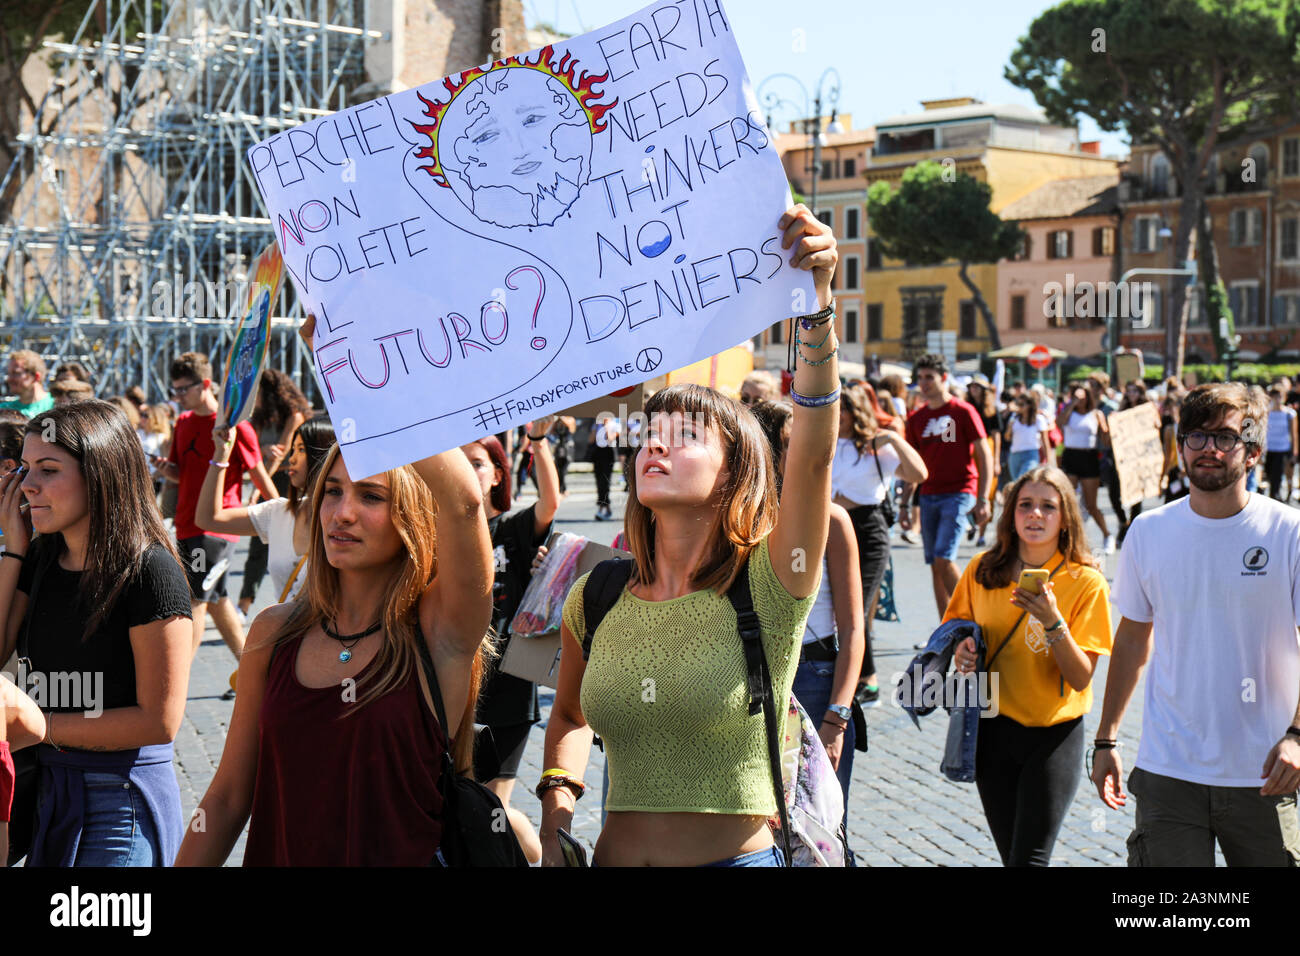 27/09/2019. Clima La Semana de Acción. Viernes para el futuro. Huelga escolar para el clima. Protesta contra el cambio climático. Roma, Italia. Foto de stock